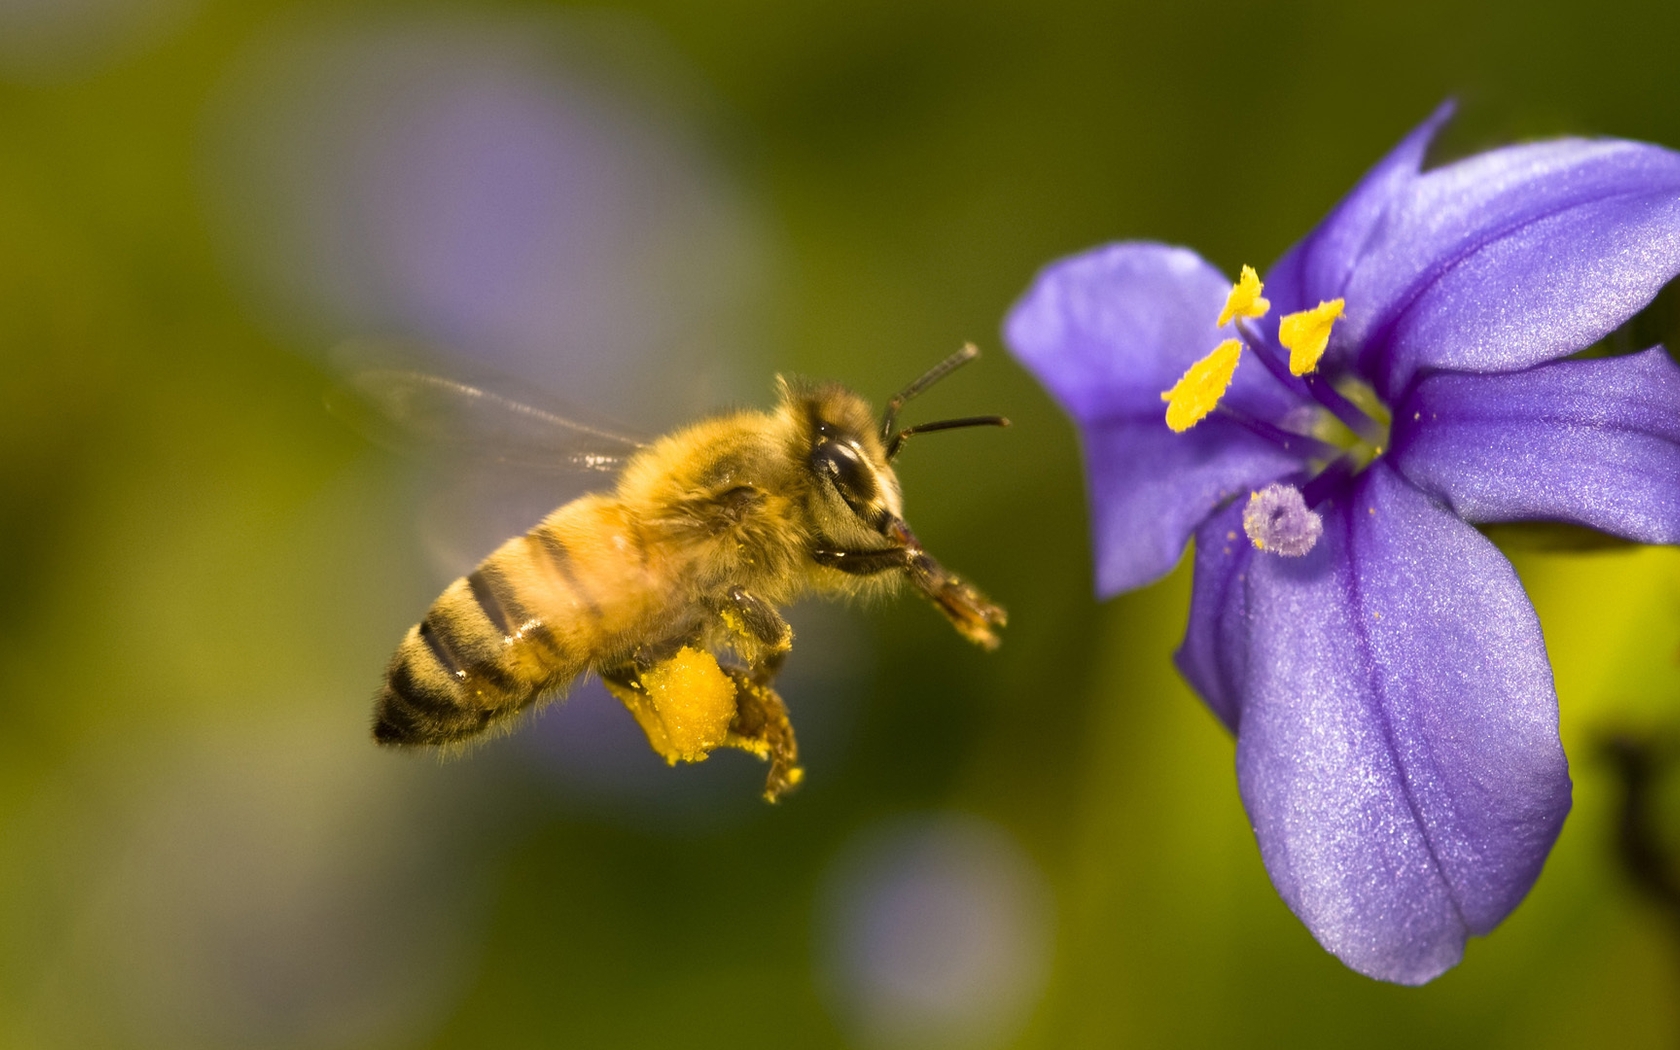 Картинка: Пчела, летит, цветок, тычинки